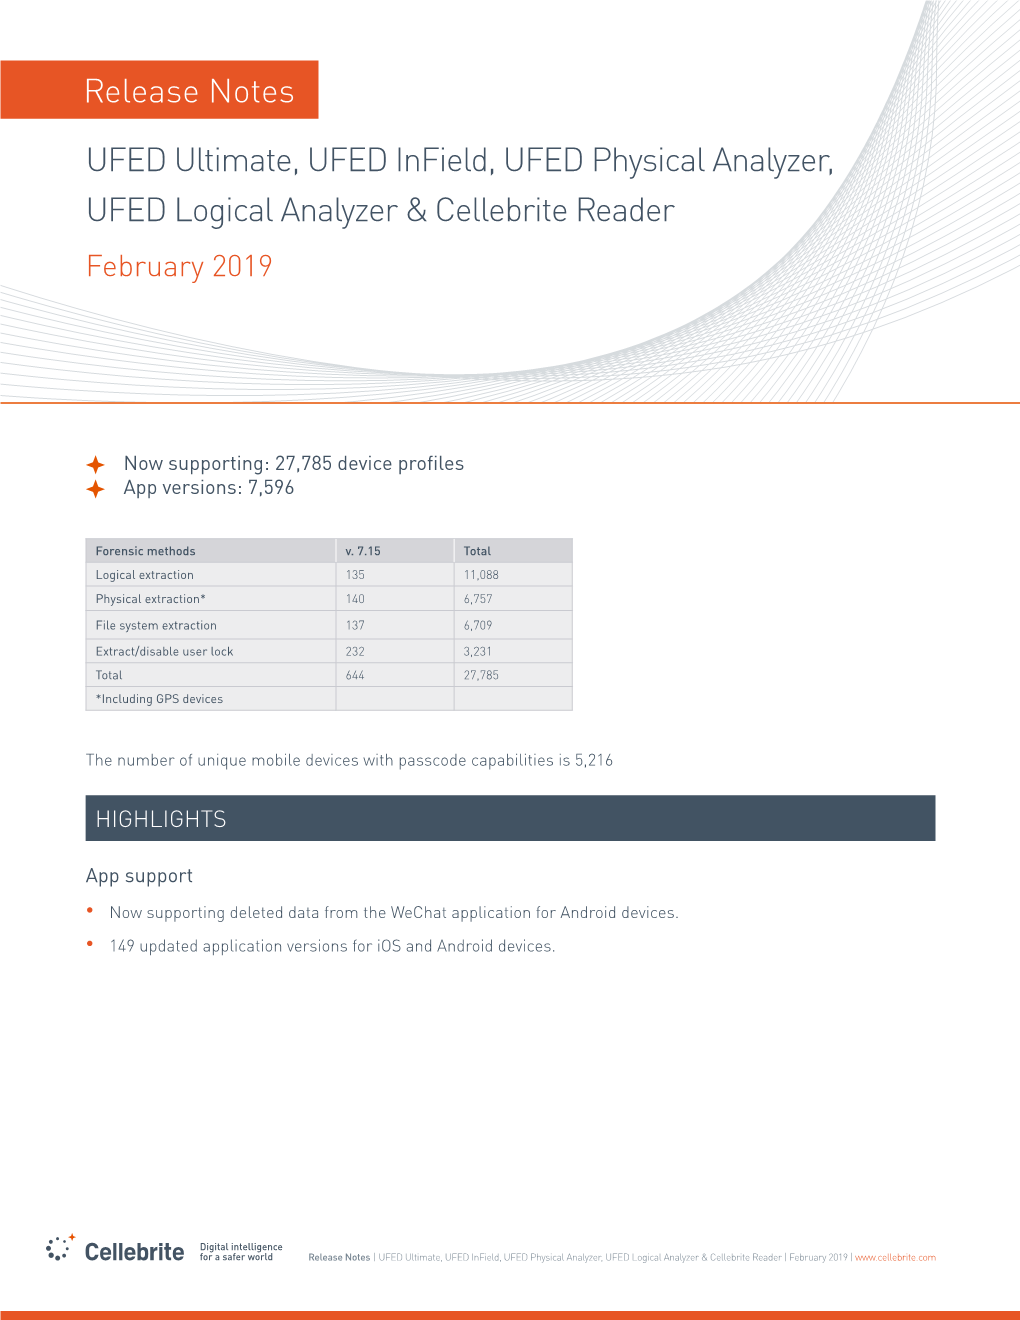 Release Notes UFED Ultimate, UFED Infield, UFED Physical Analyzer